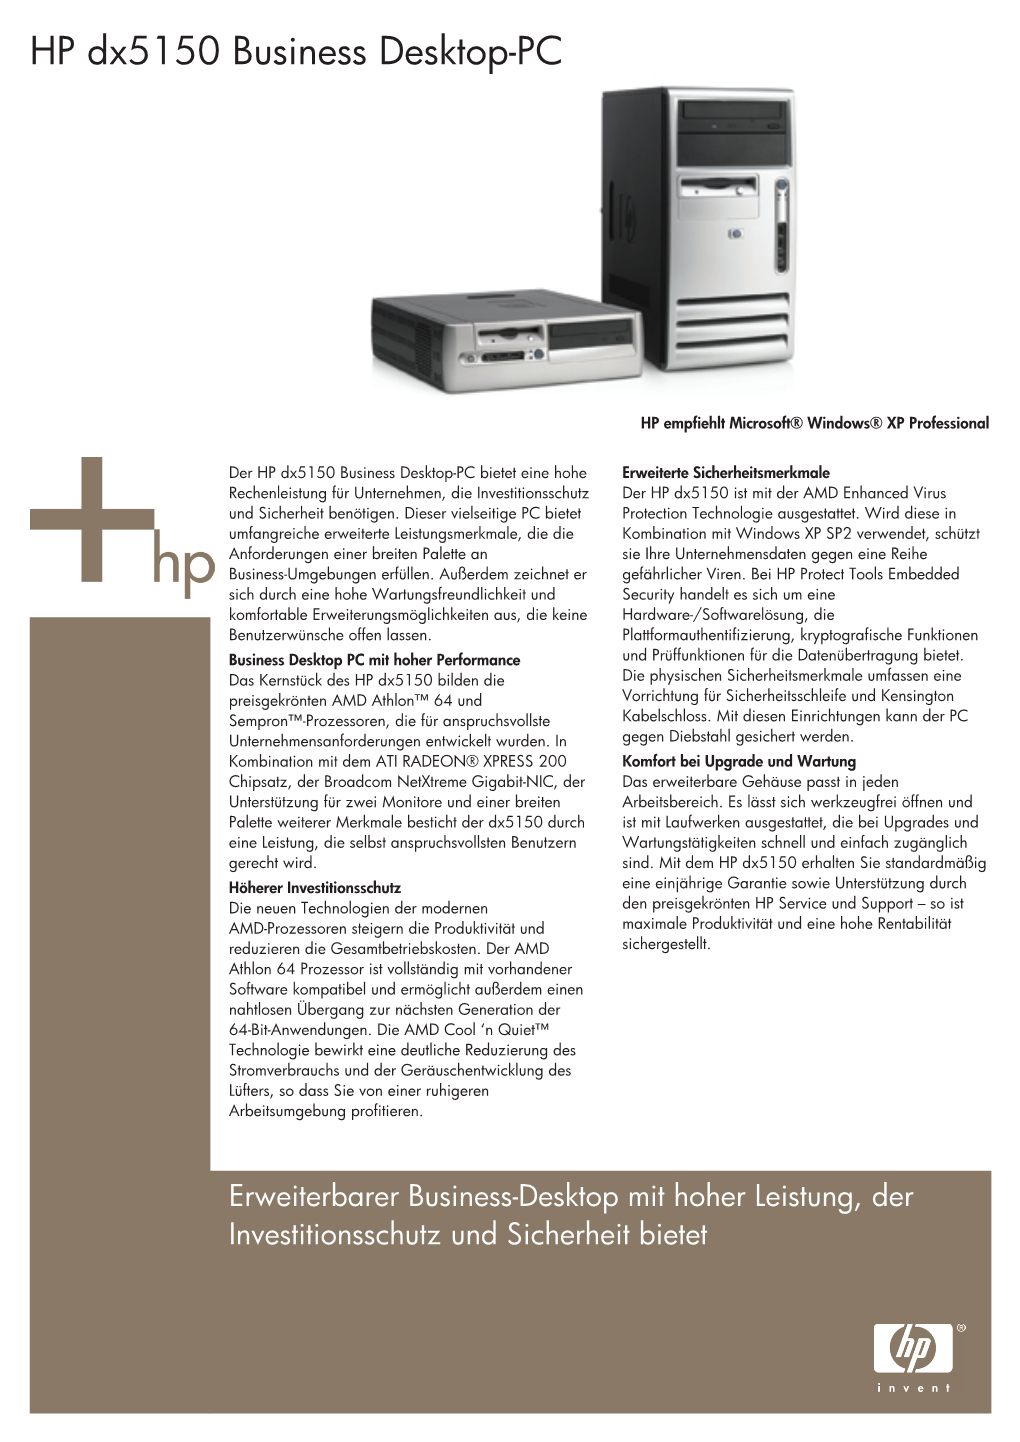 HP Dx5150 Business Desktop-PC